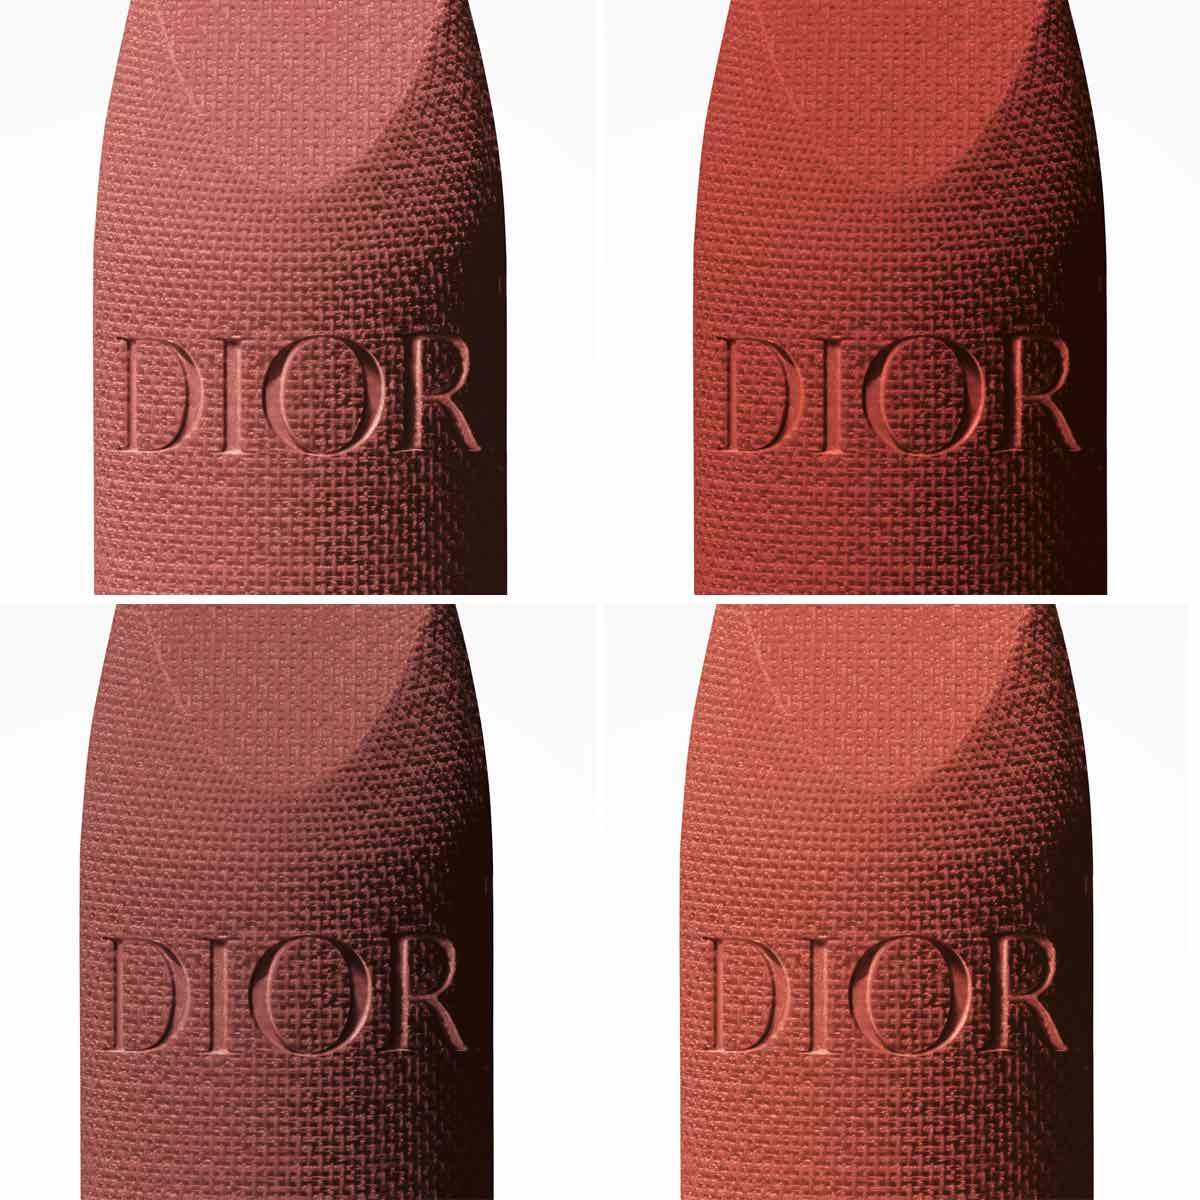 Dior Rouge velvet mat lipstick